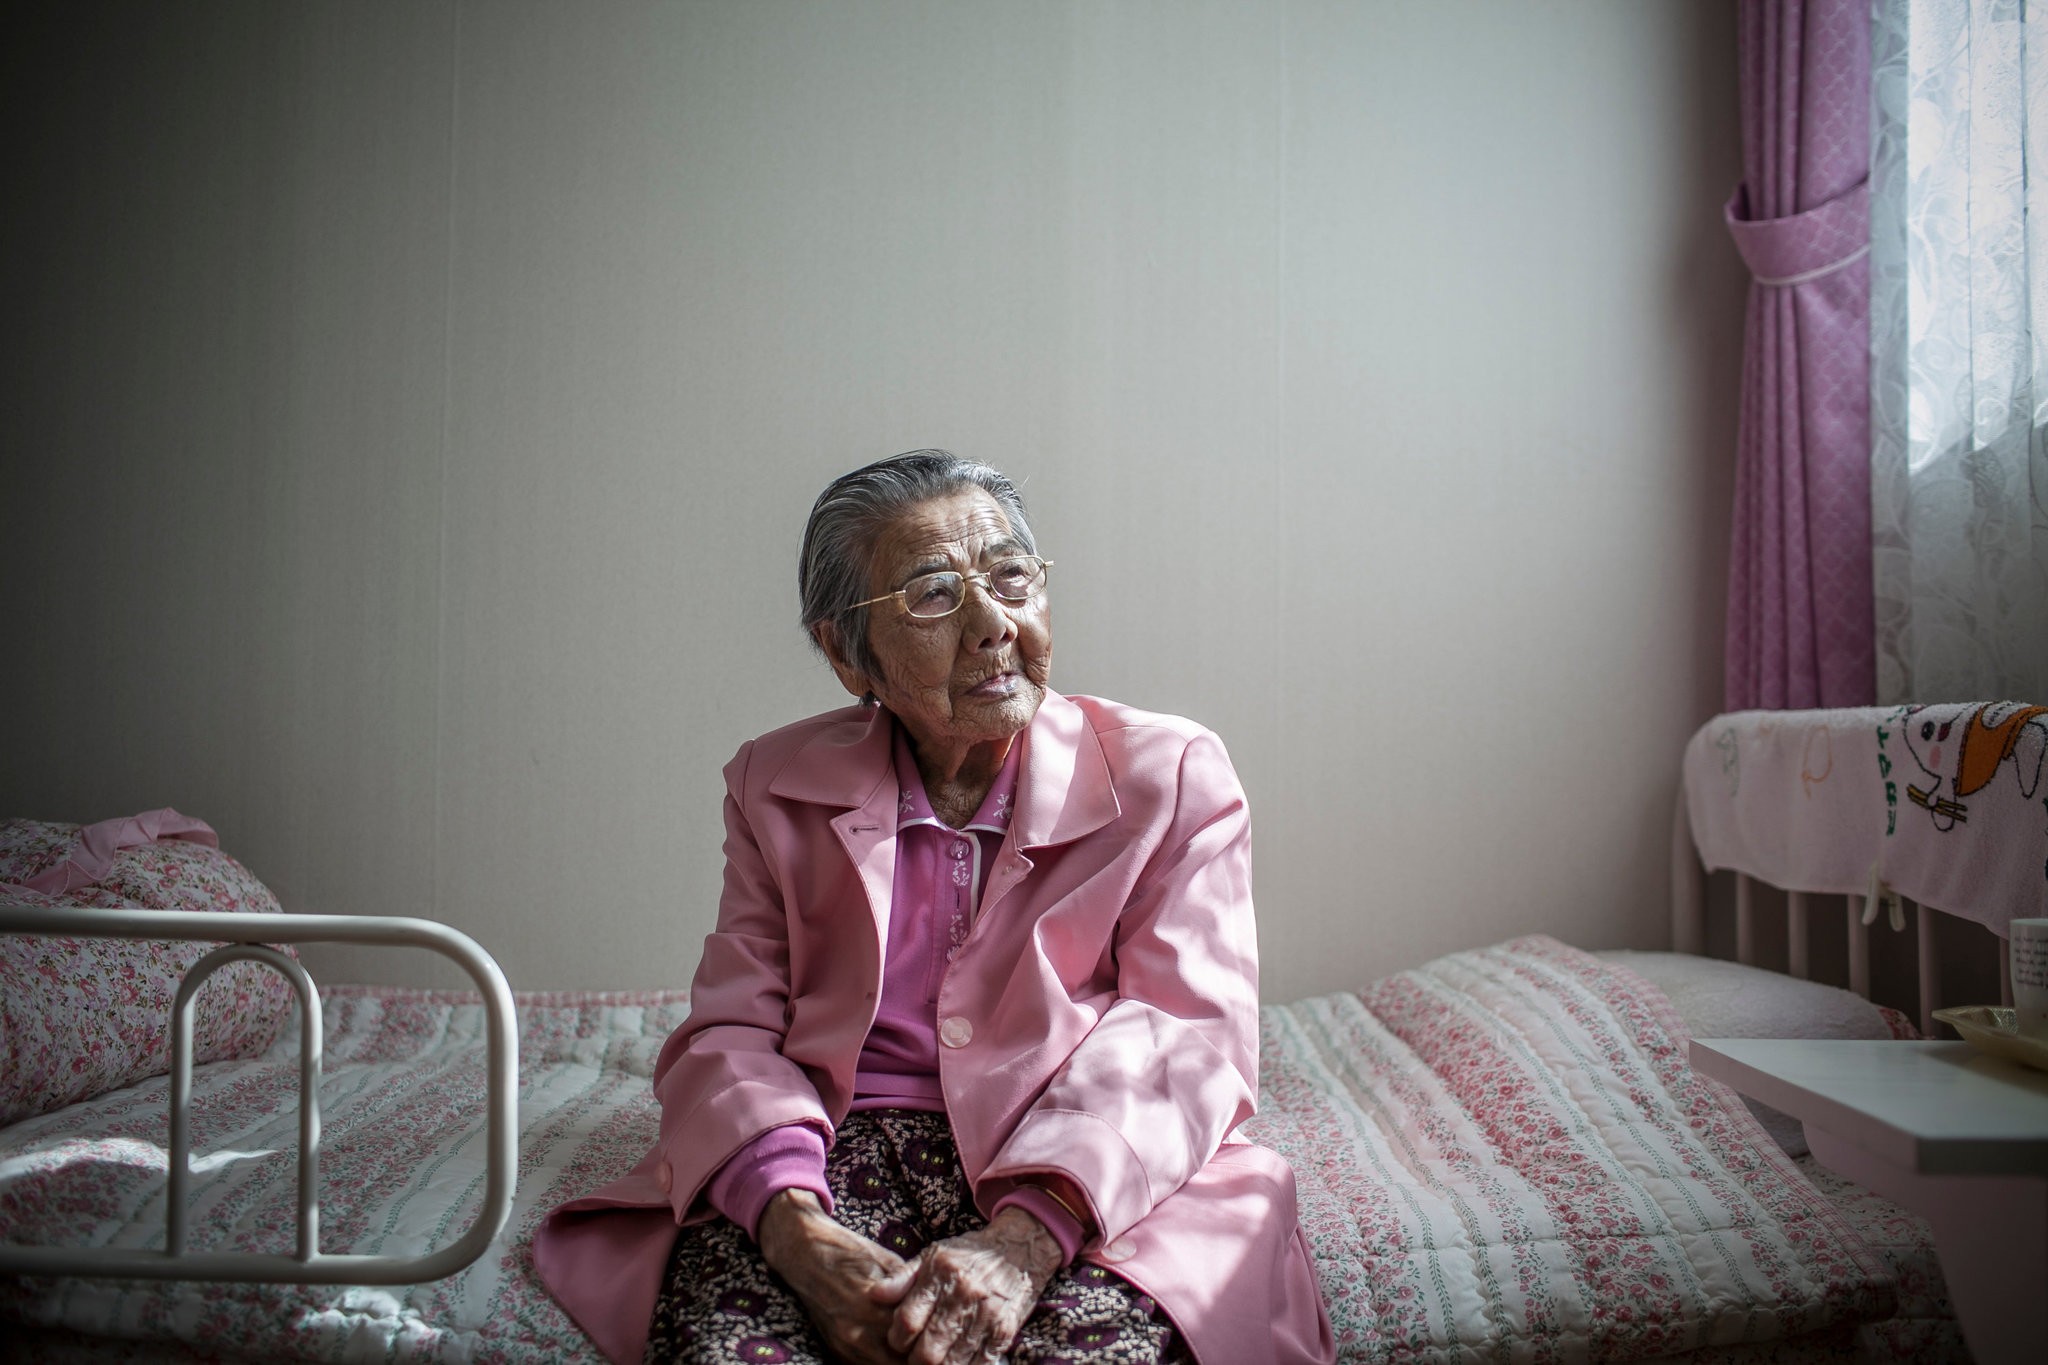 Hàn Quốc nở rộ startup dịch vụ chăm sóc người già neo đơn - ảnh 1